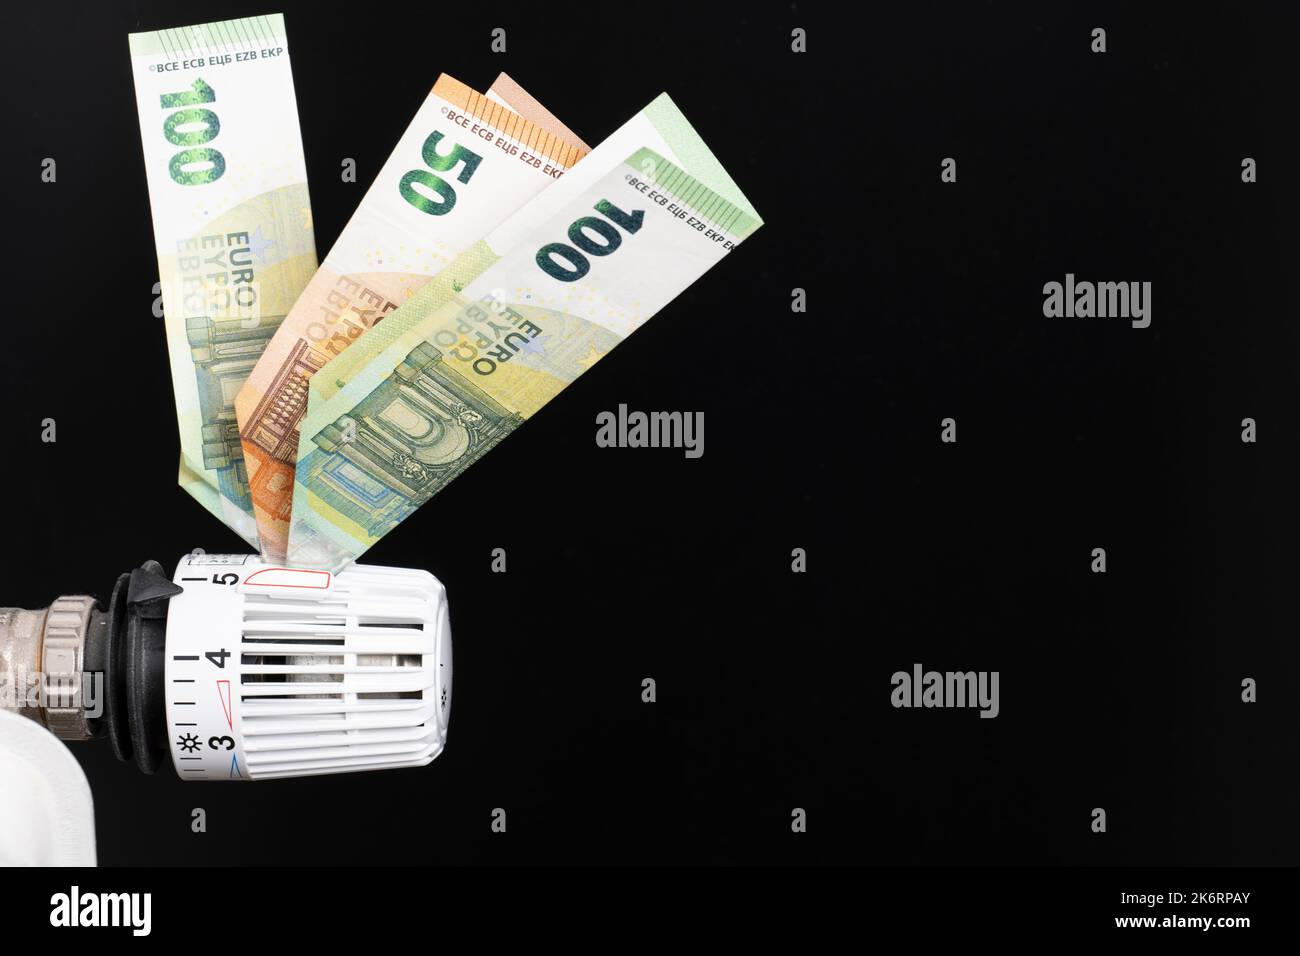 Thermostat de chauffage, équipé de billets en euros, fond noir Banque D'Images